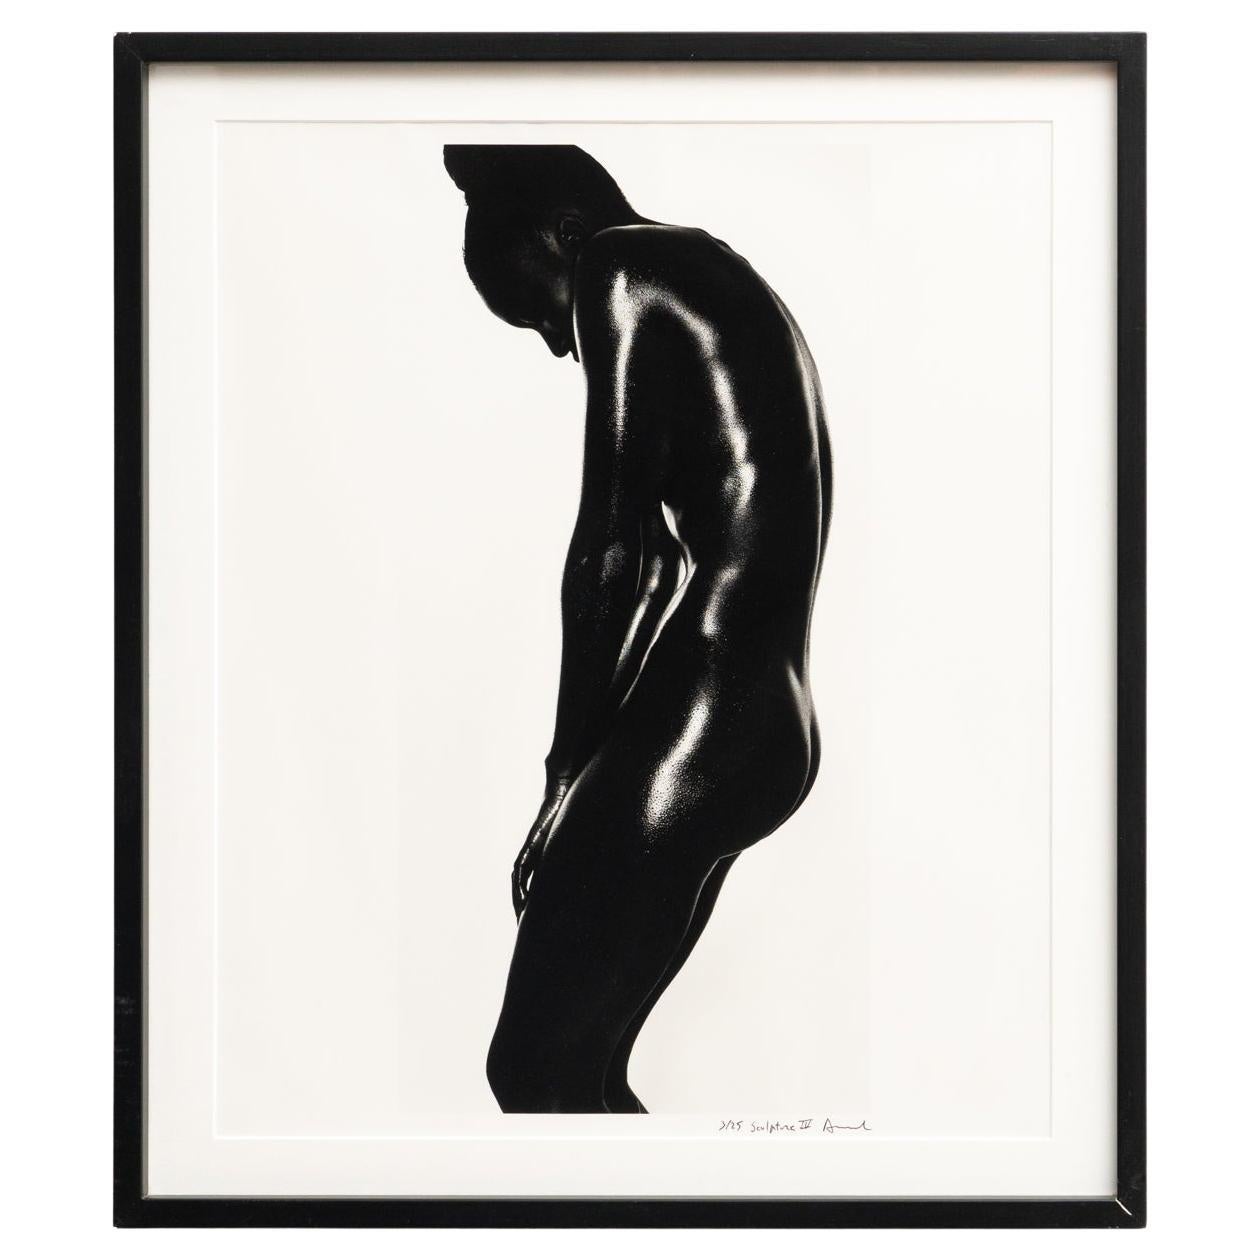 Miquel Arnal Contemporary Photography, circa 1990 For Sale